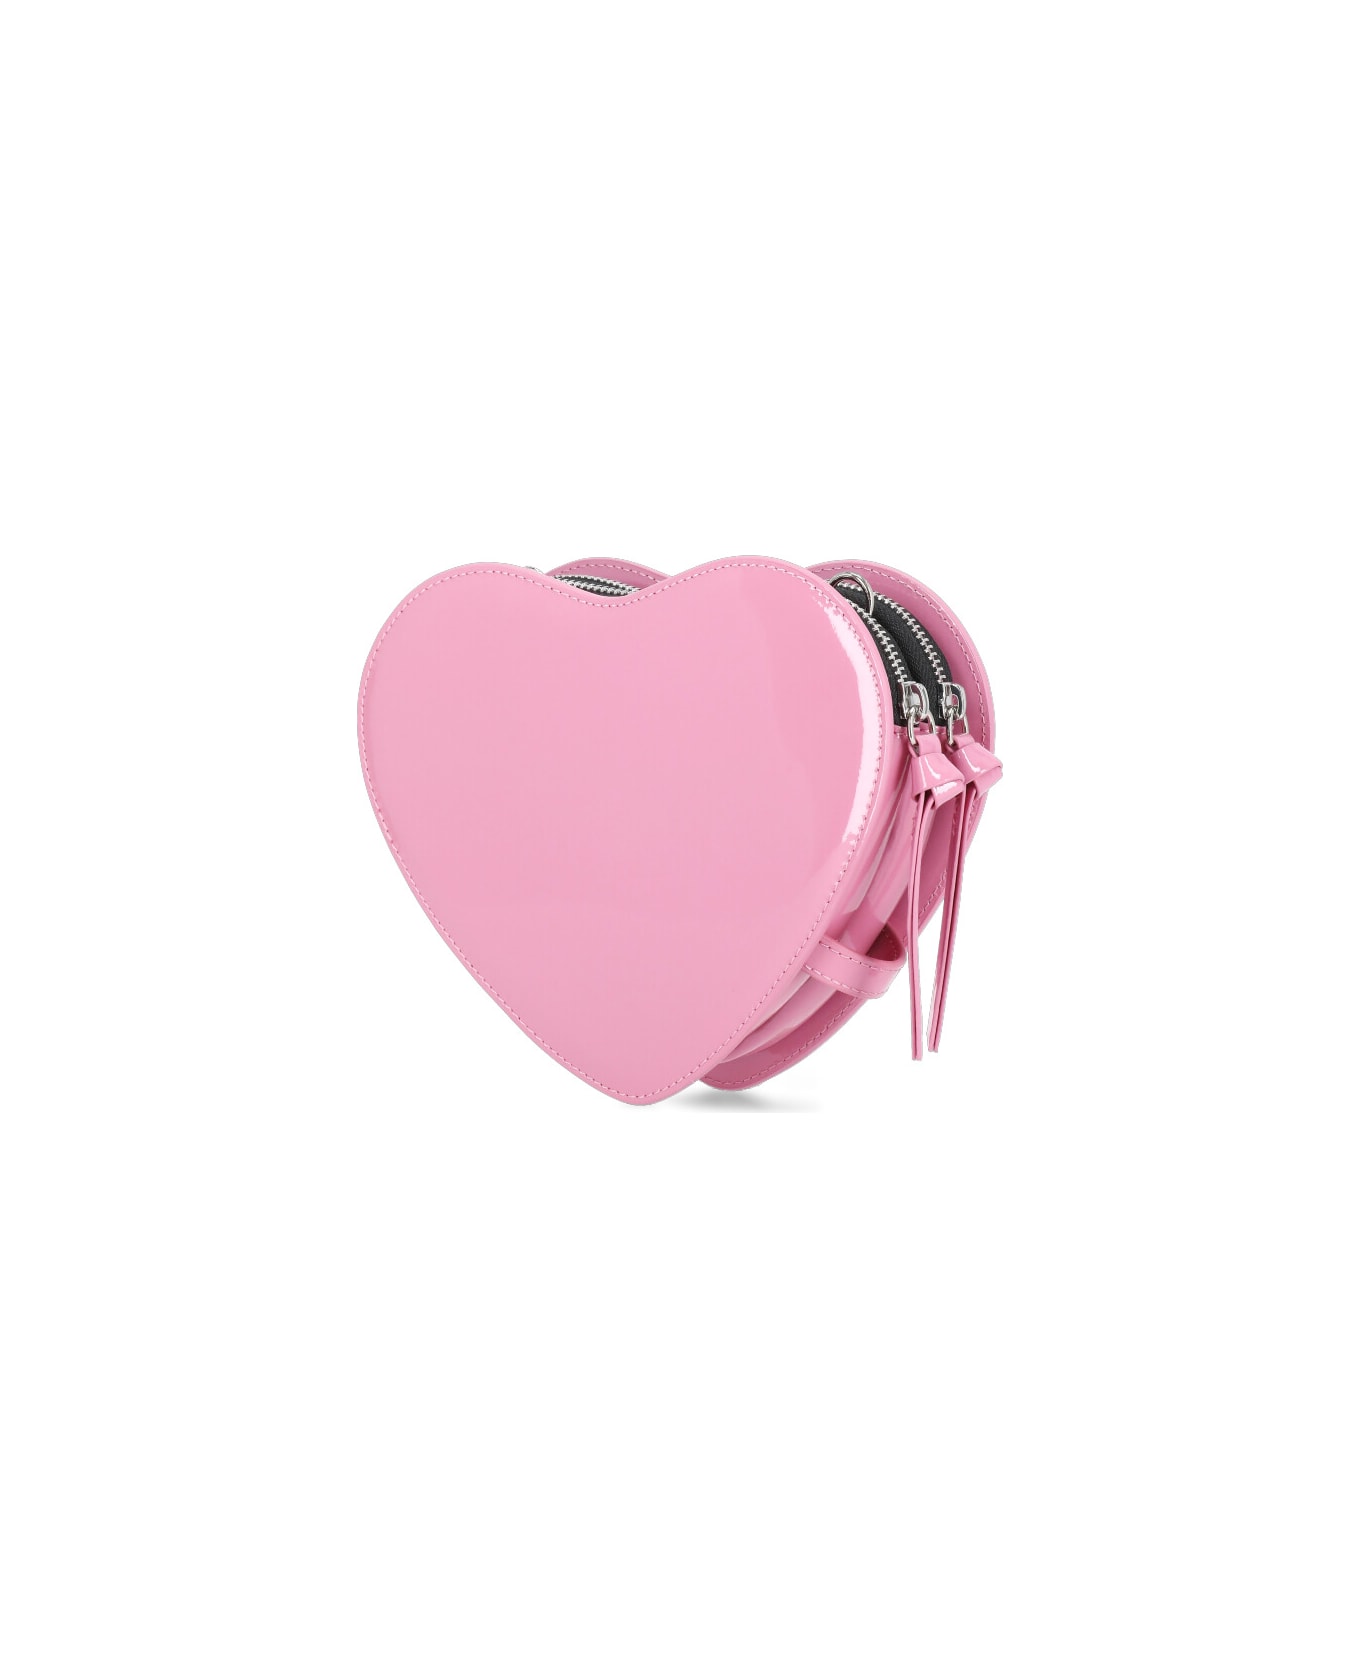 Vivienne Westwood Louise Heart Bag - Pink